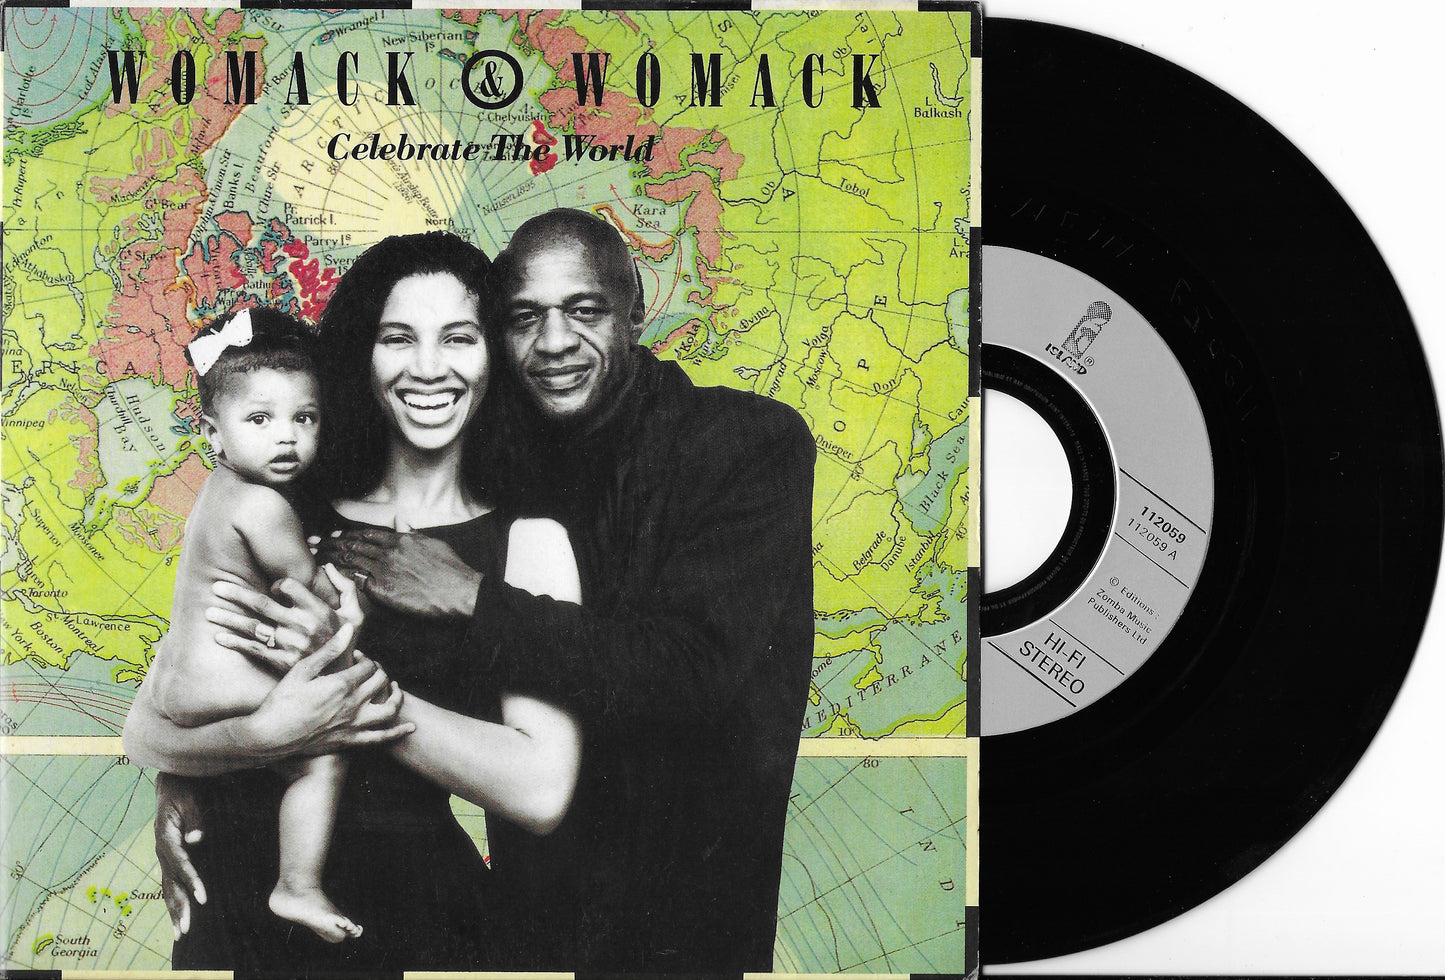 WOMACK & WOMACK - Celebrate The World